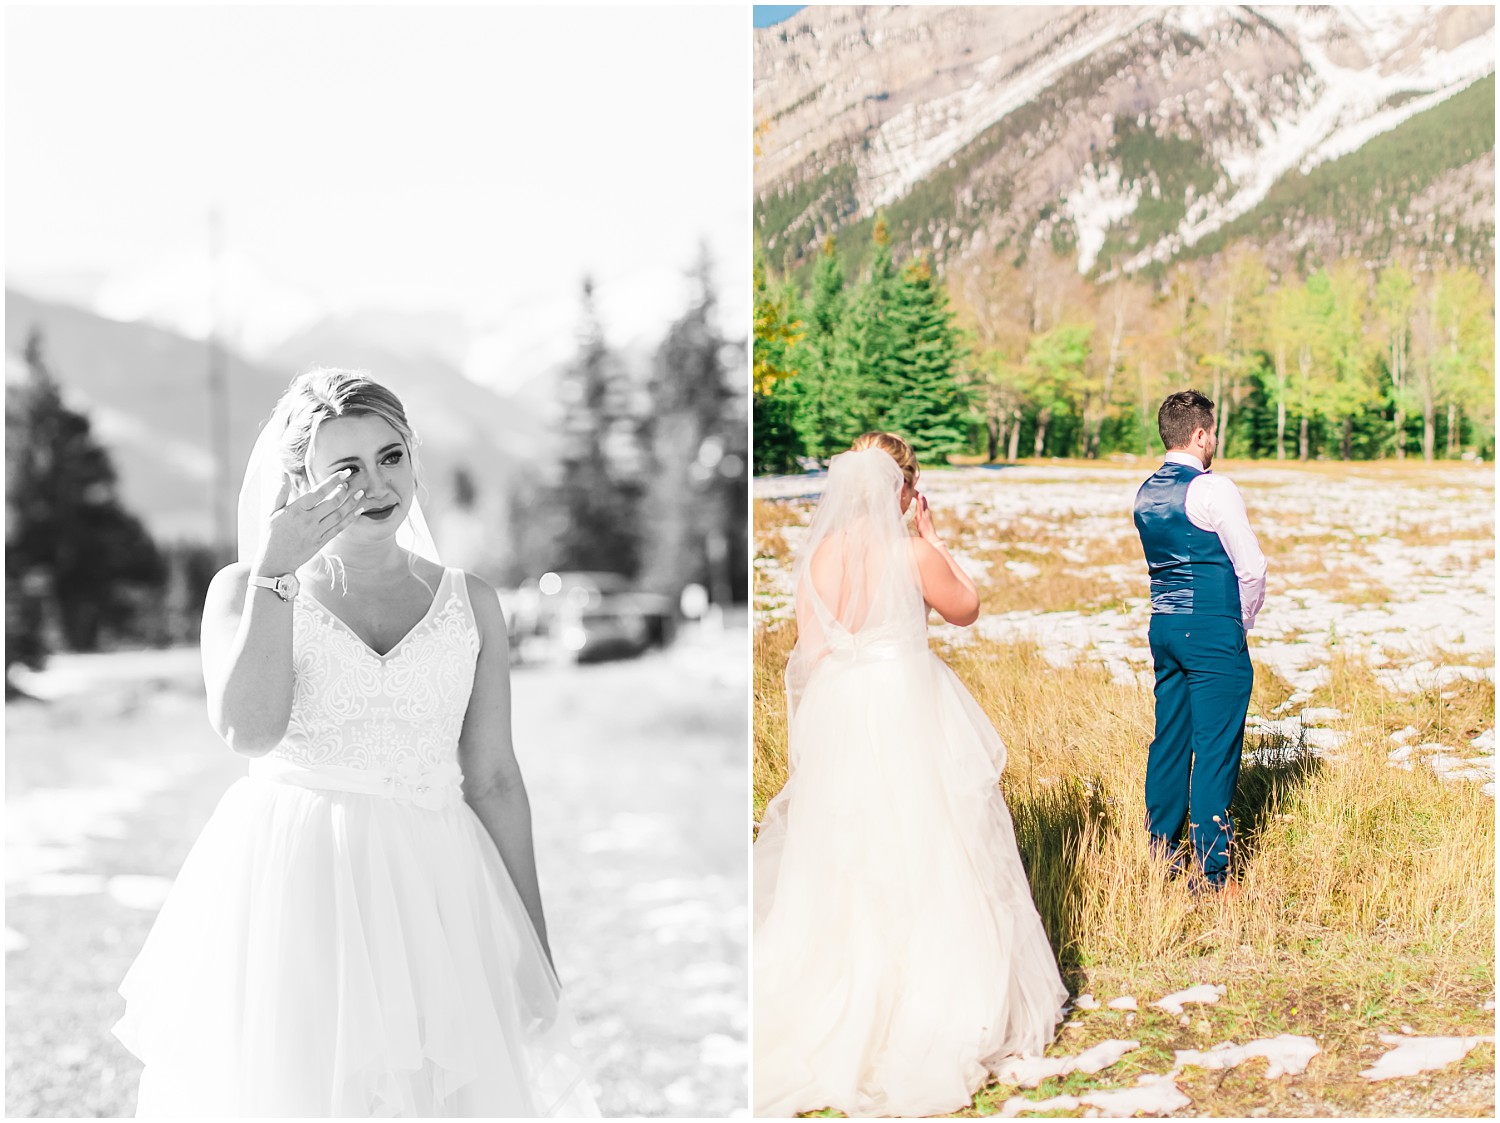 Mount Norquay Ski Resort Wedding | Ryan & Darion